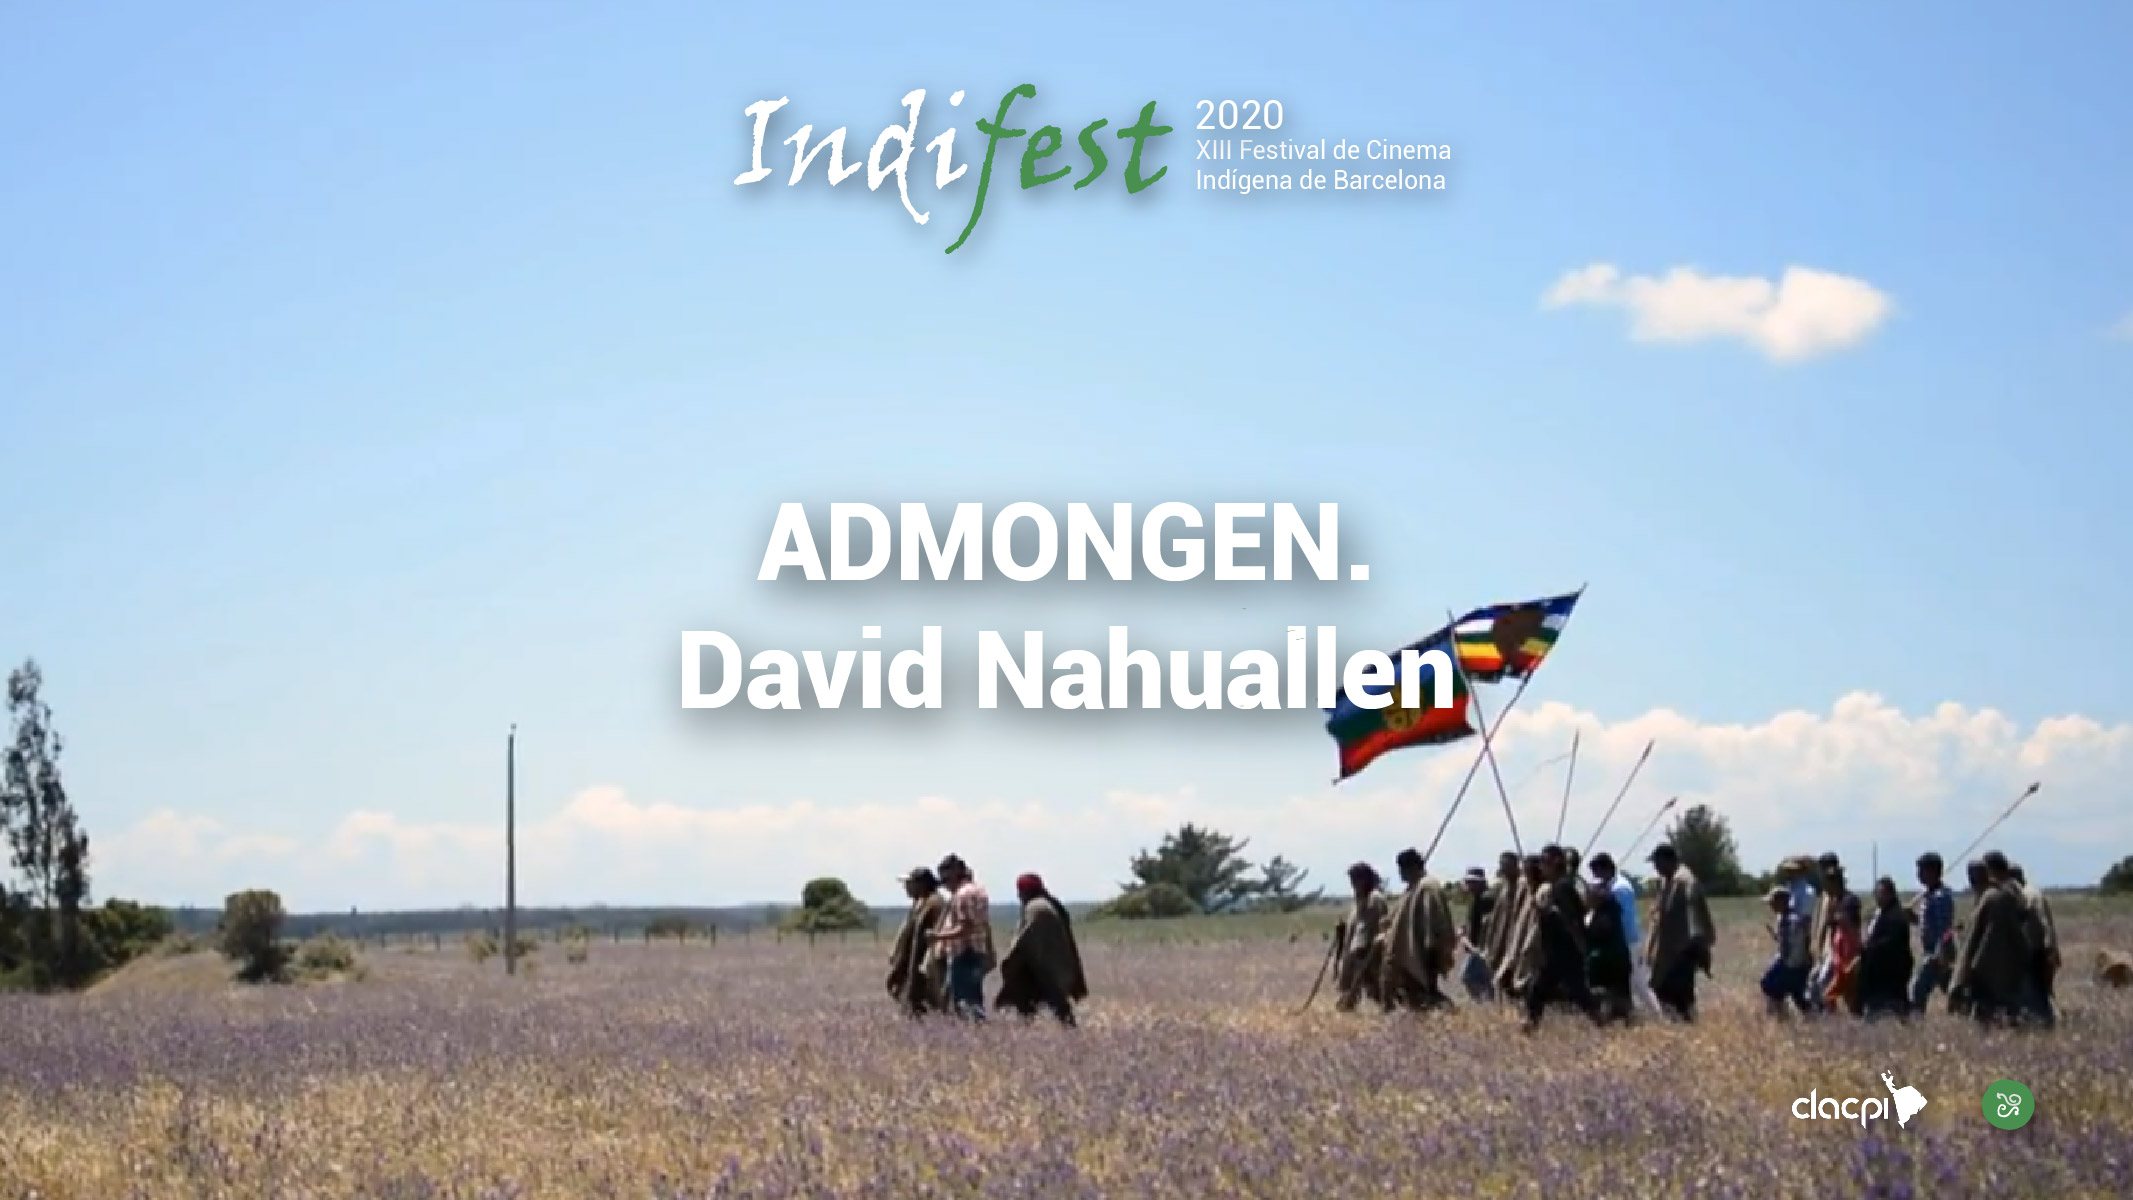 ADMONGEN. David Nahuallen cast